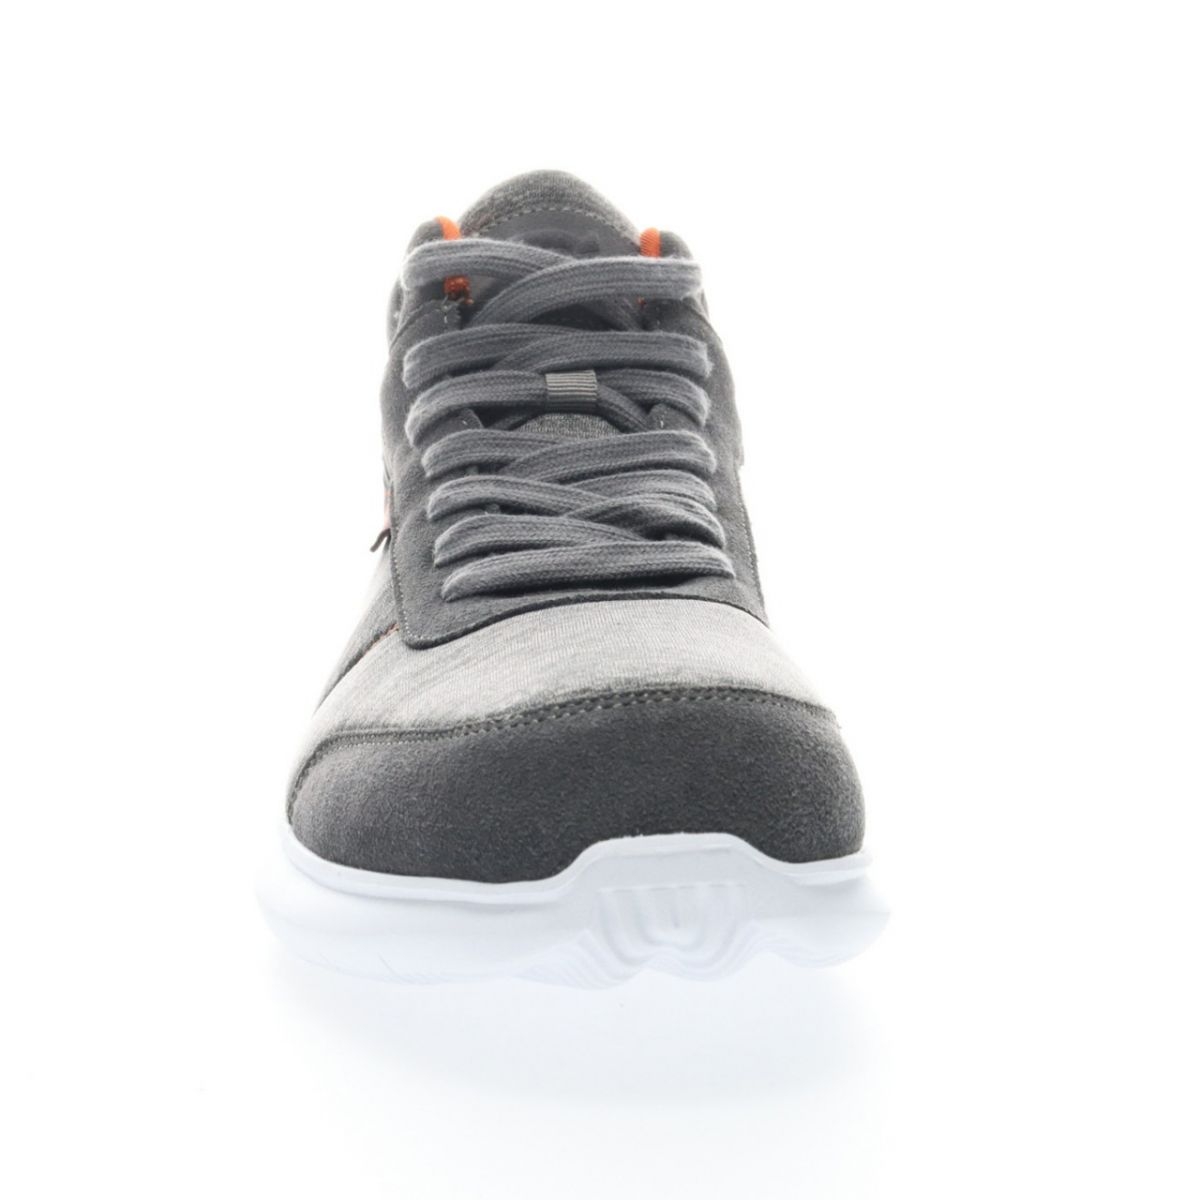 Propet Men's Viator Hi Sneaker Grey/Orange - MAA112MGOR Grey/orange - Grey/orange, 16 XX-Wide